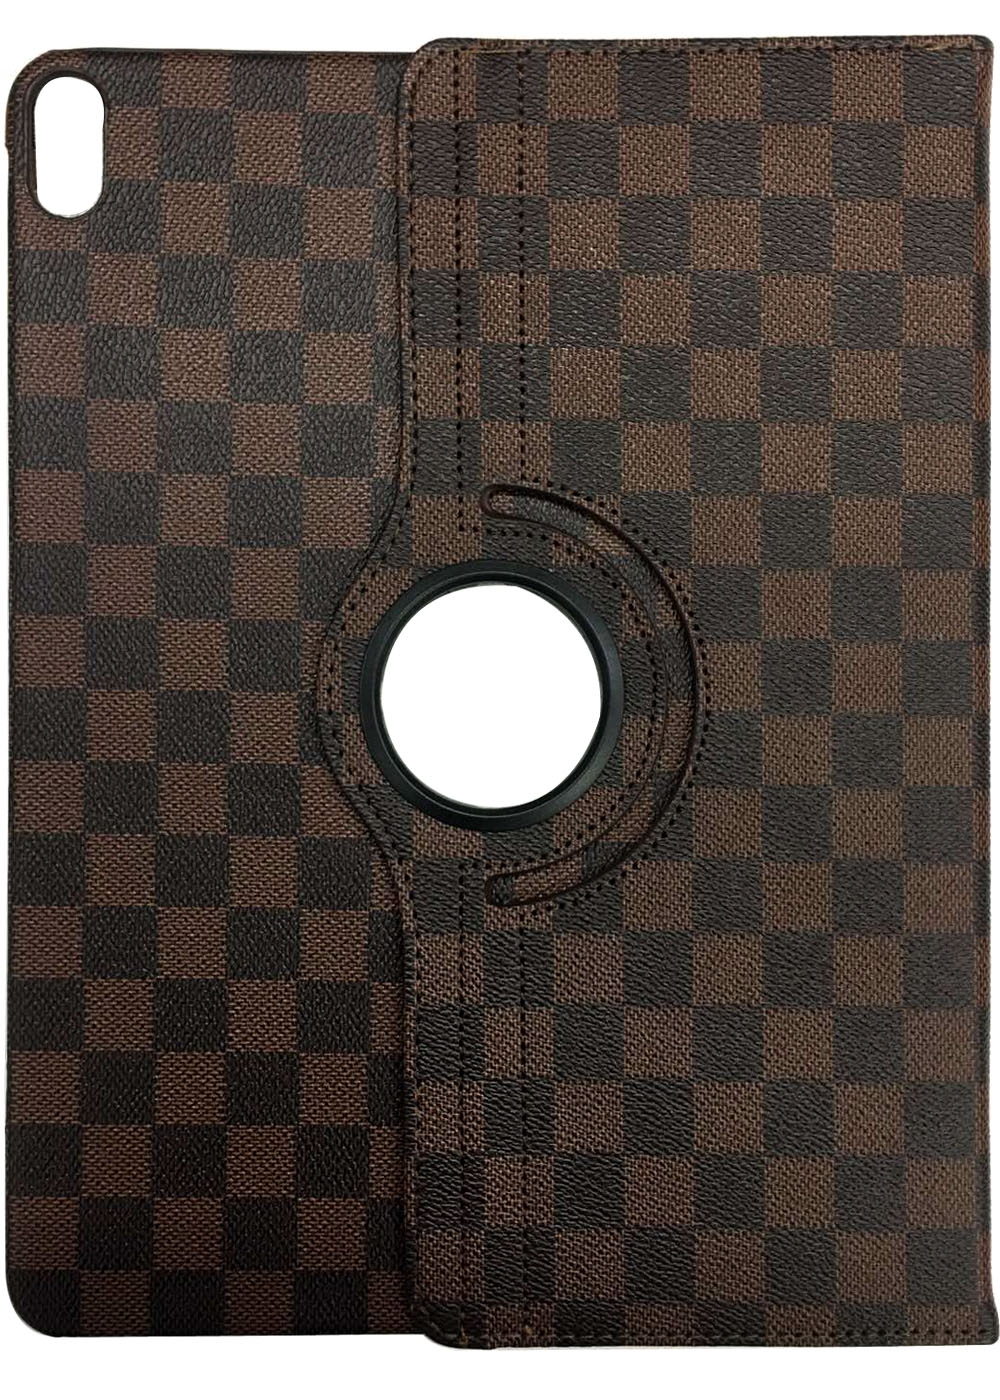 IPdMini4 Portfolio Case checker brown